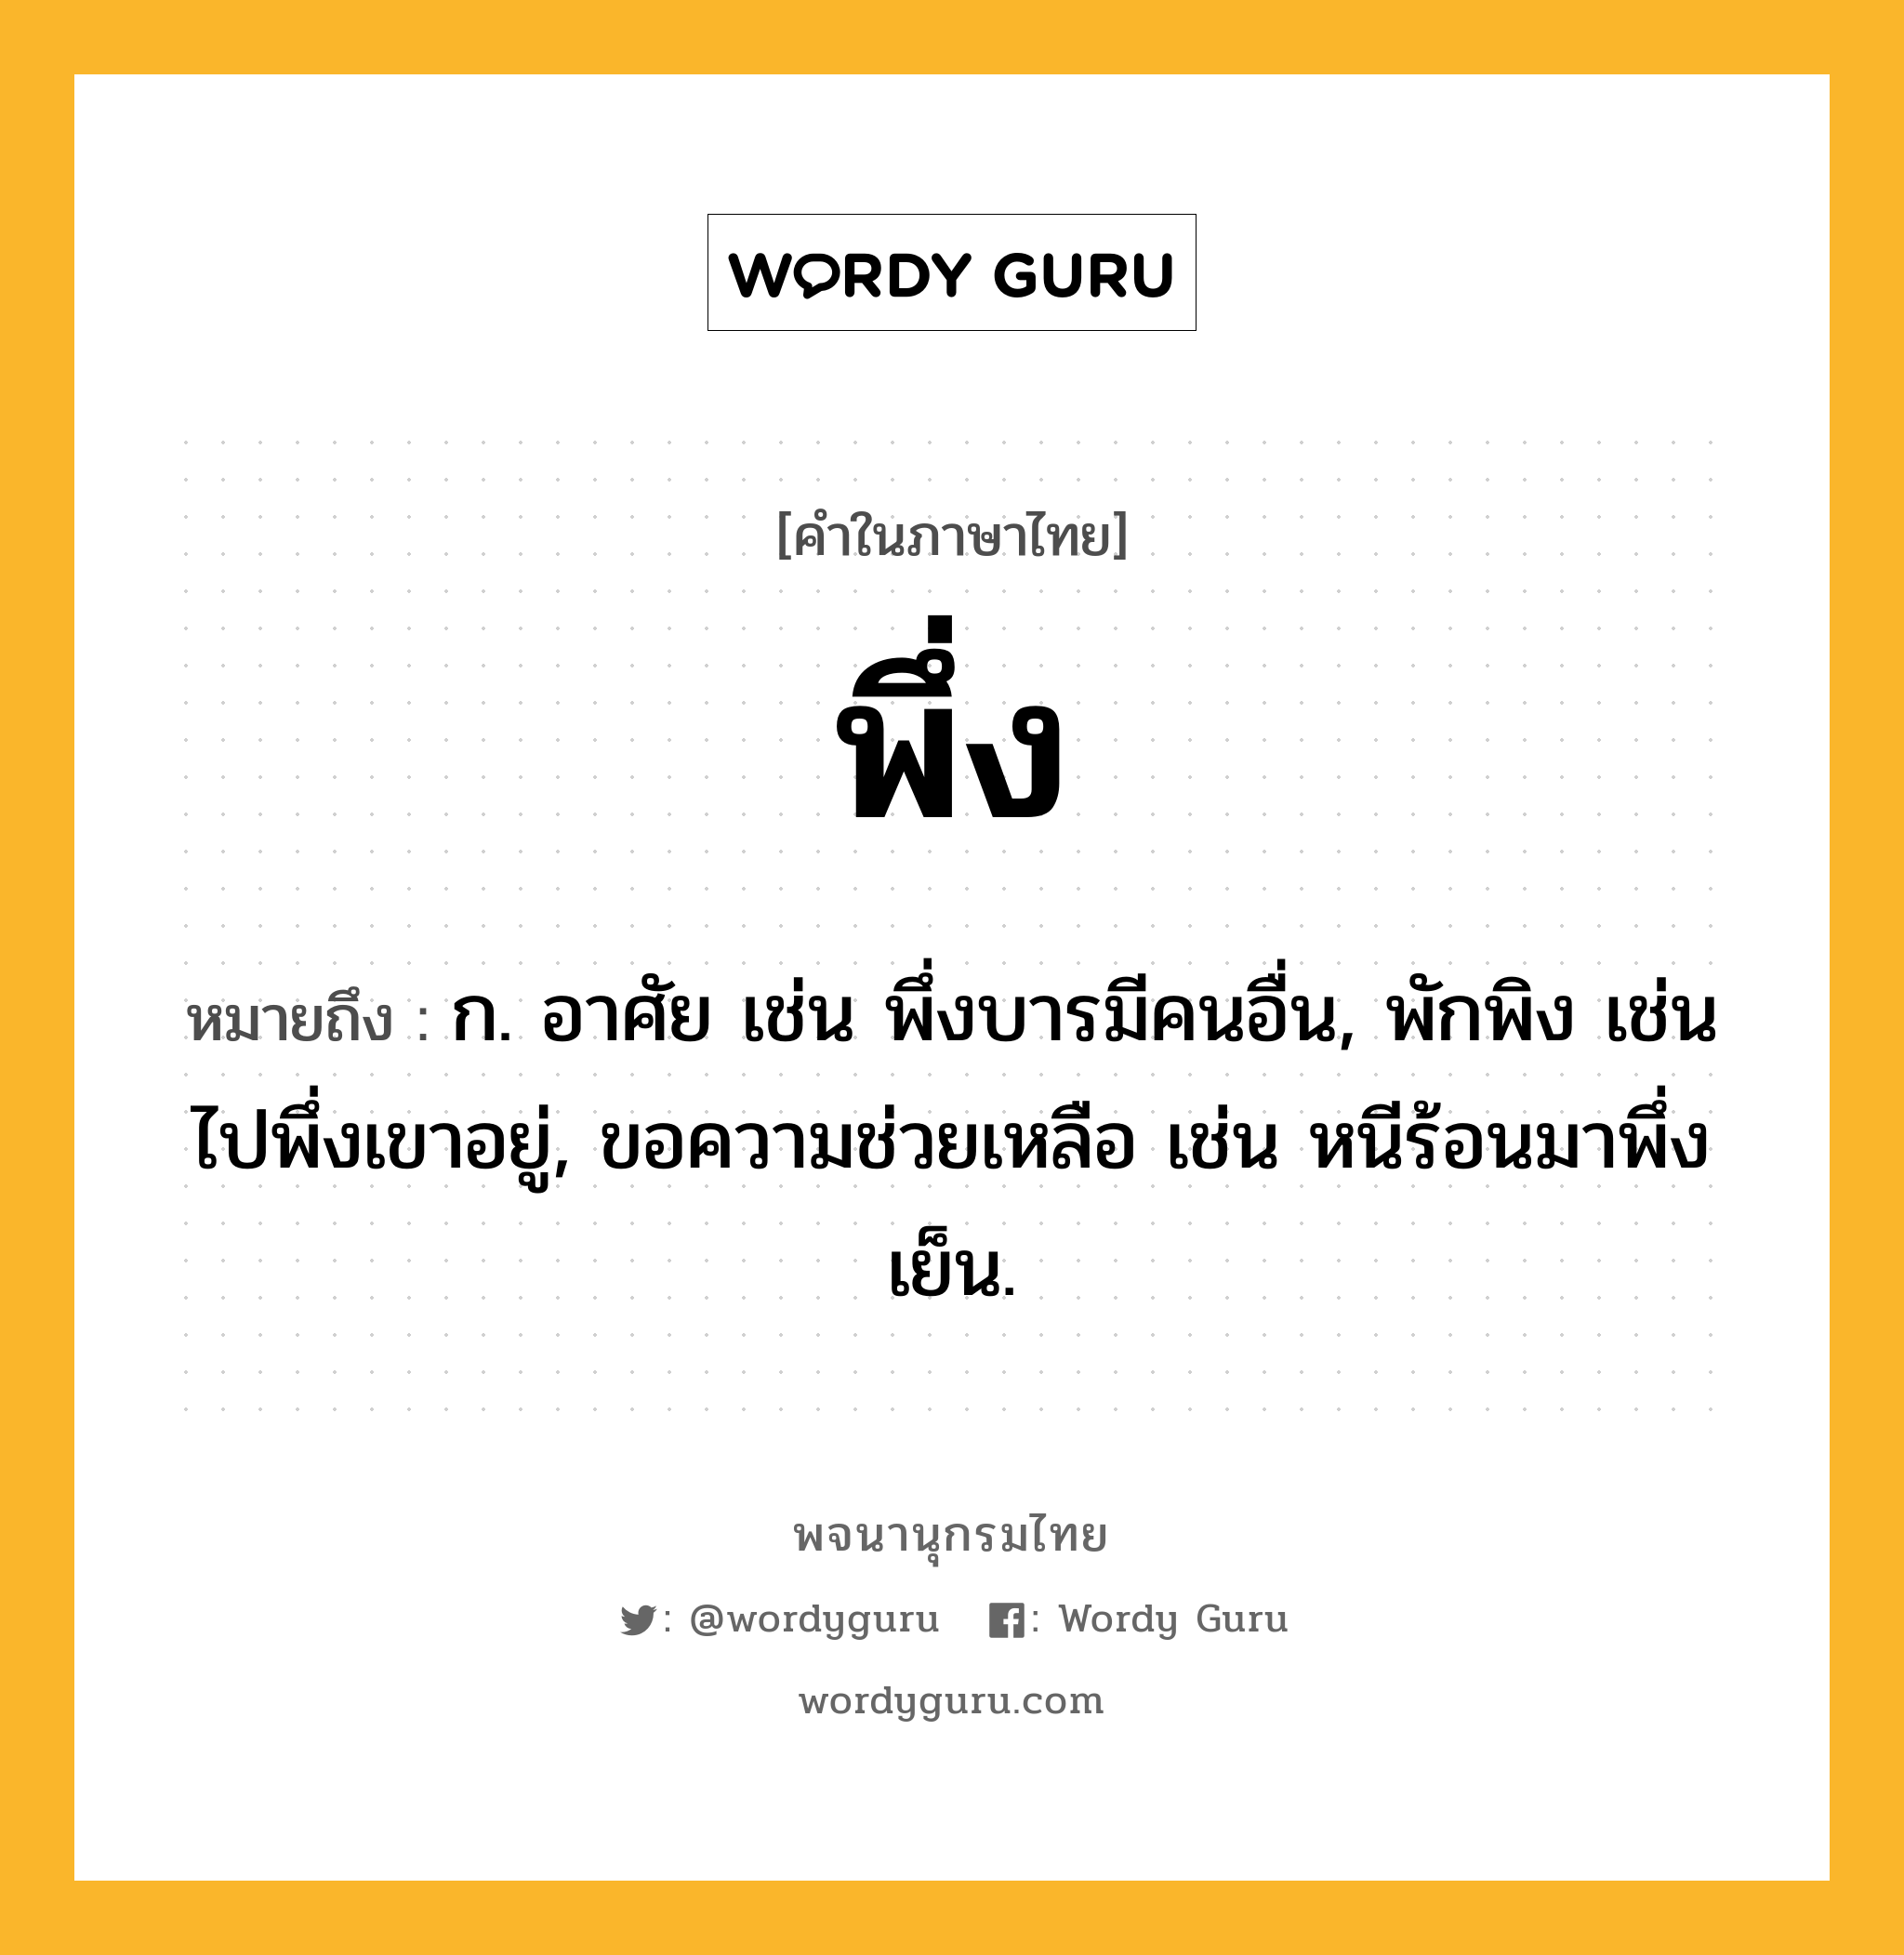 พึ่ง ความหมาย หมายถึงอะไร?, คำในภาษาไทย พึ่ง หมายถึง ก. อาศัย เช่น พึ่งบารมีคนอื่น, พักพิง เช่น ไปพึ่งเขาอยู่, ขอความช่วยเหลือ เช่น หนีร้อนมาพึ่งเย็น.